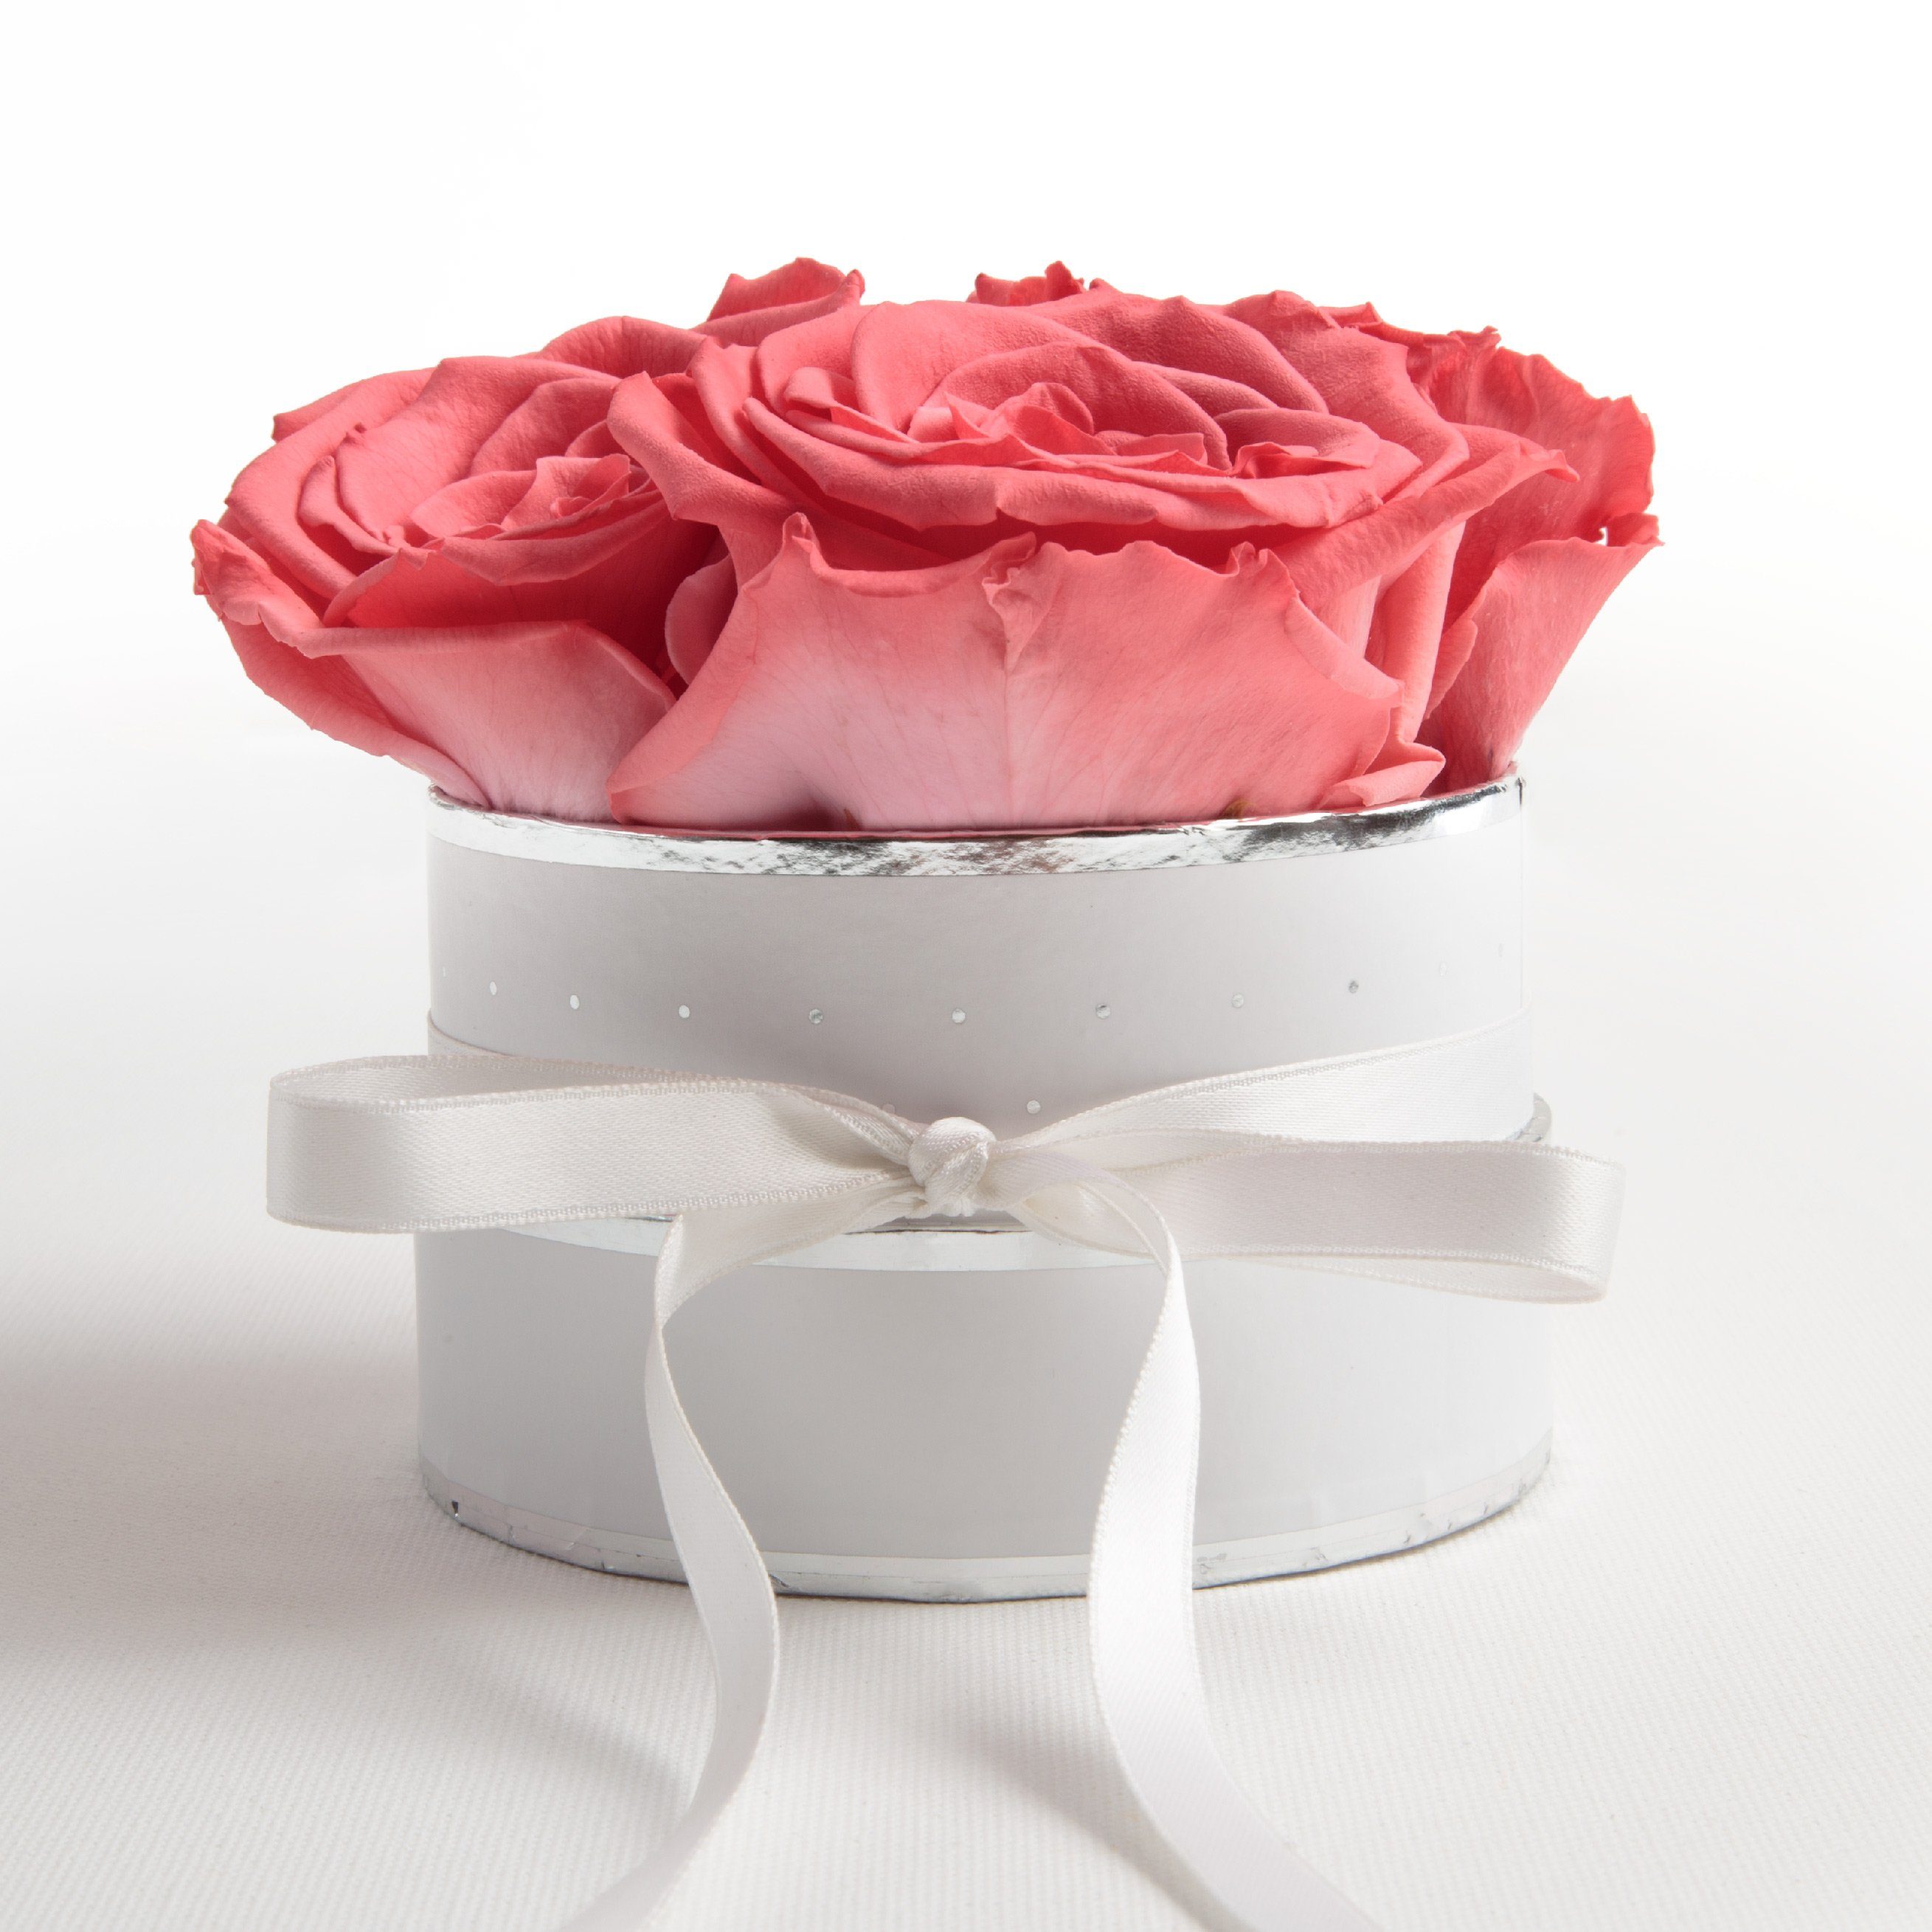 Kunstblume Infinity Rosenbox weiß rund 4 konservierte Rosen inklusiv Geschenkbox Rose, ROSEMARIE SCHULZ Heidelberg, Höhe 10 cm, echte Rosen haltbar 3 Jahre Koralle | Kunstblumen